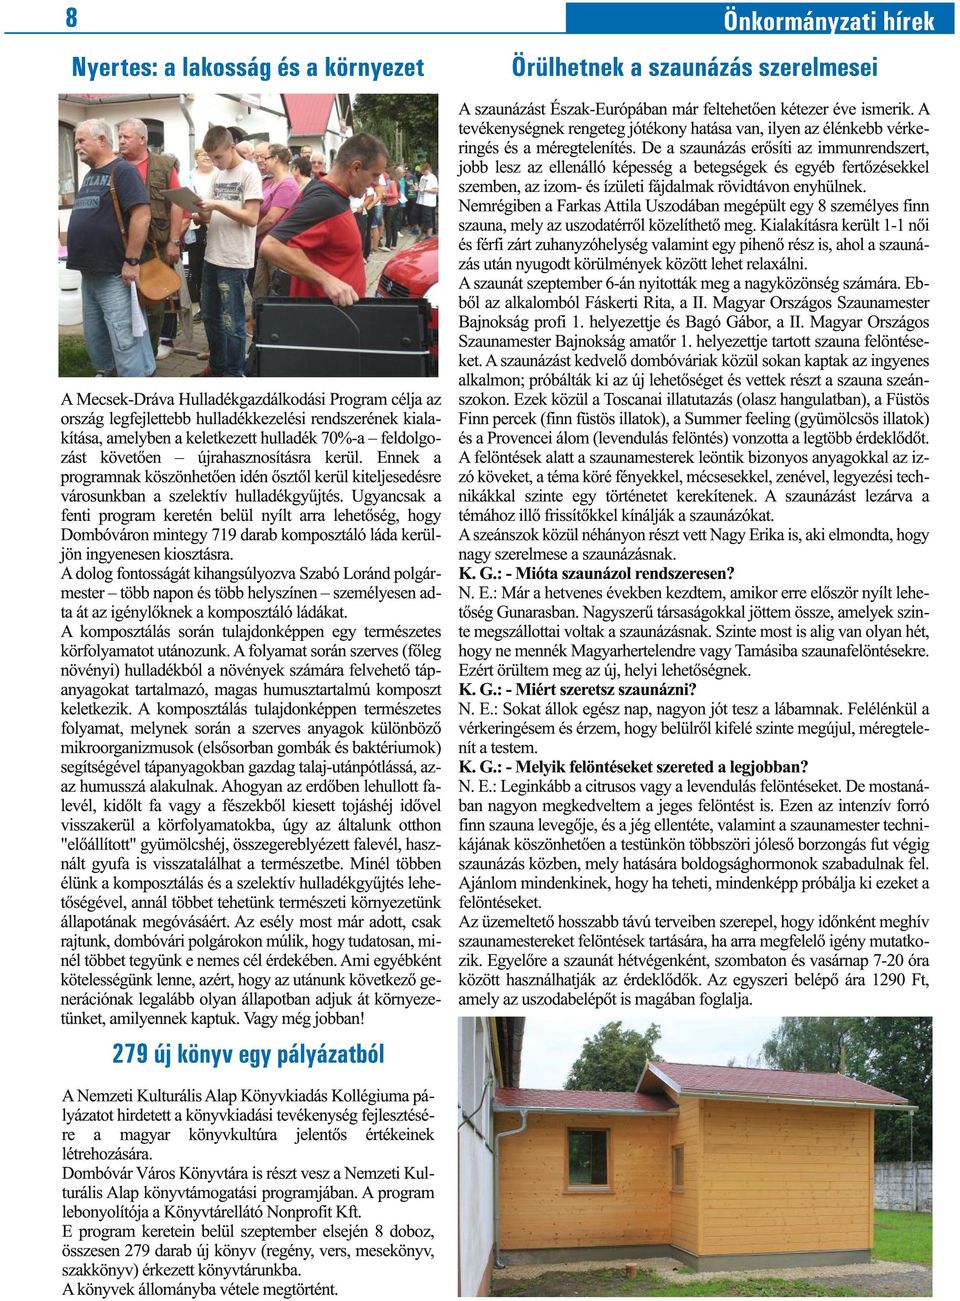 Ugyancsak a fenti program keretén belül nyílt arra lehetőség, hogy Dombóváron mintegy 719 darab komposztáló láda kerüljön ingyenesen kiosztásra.